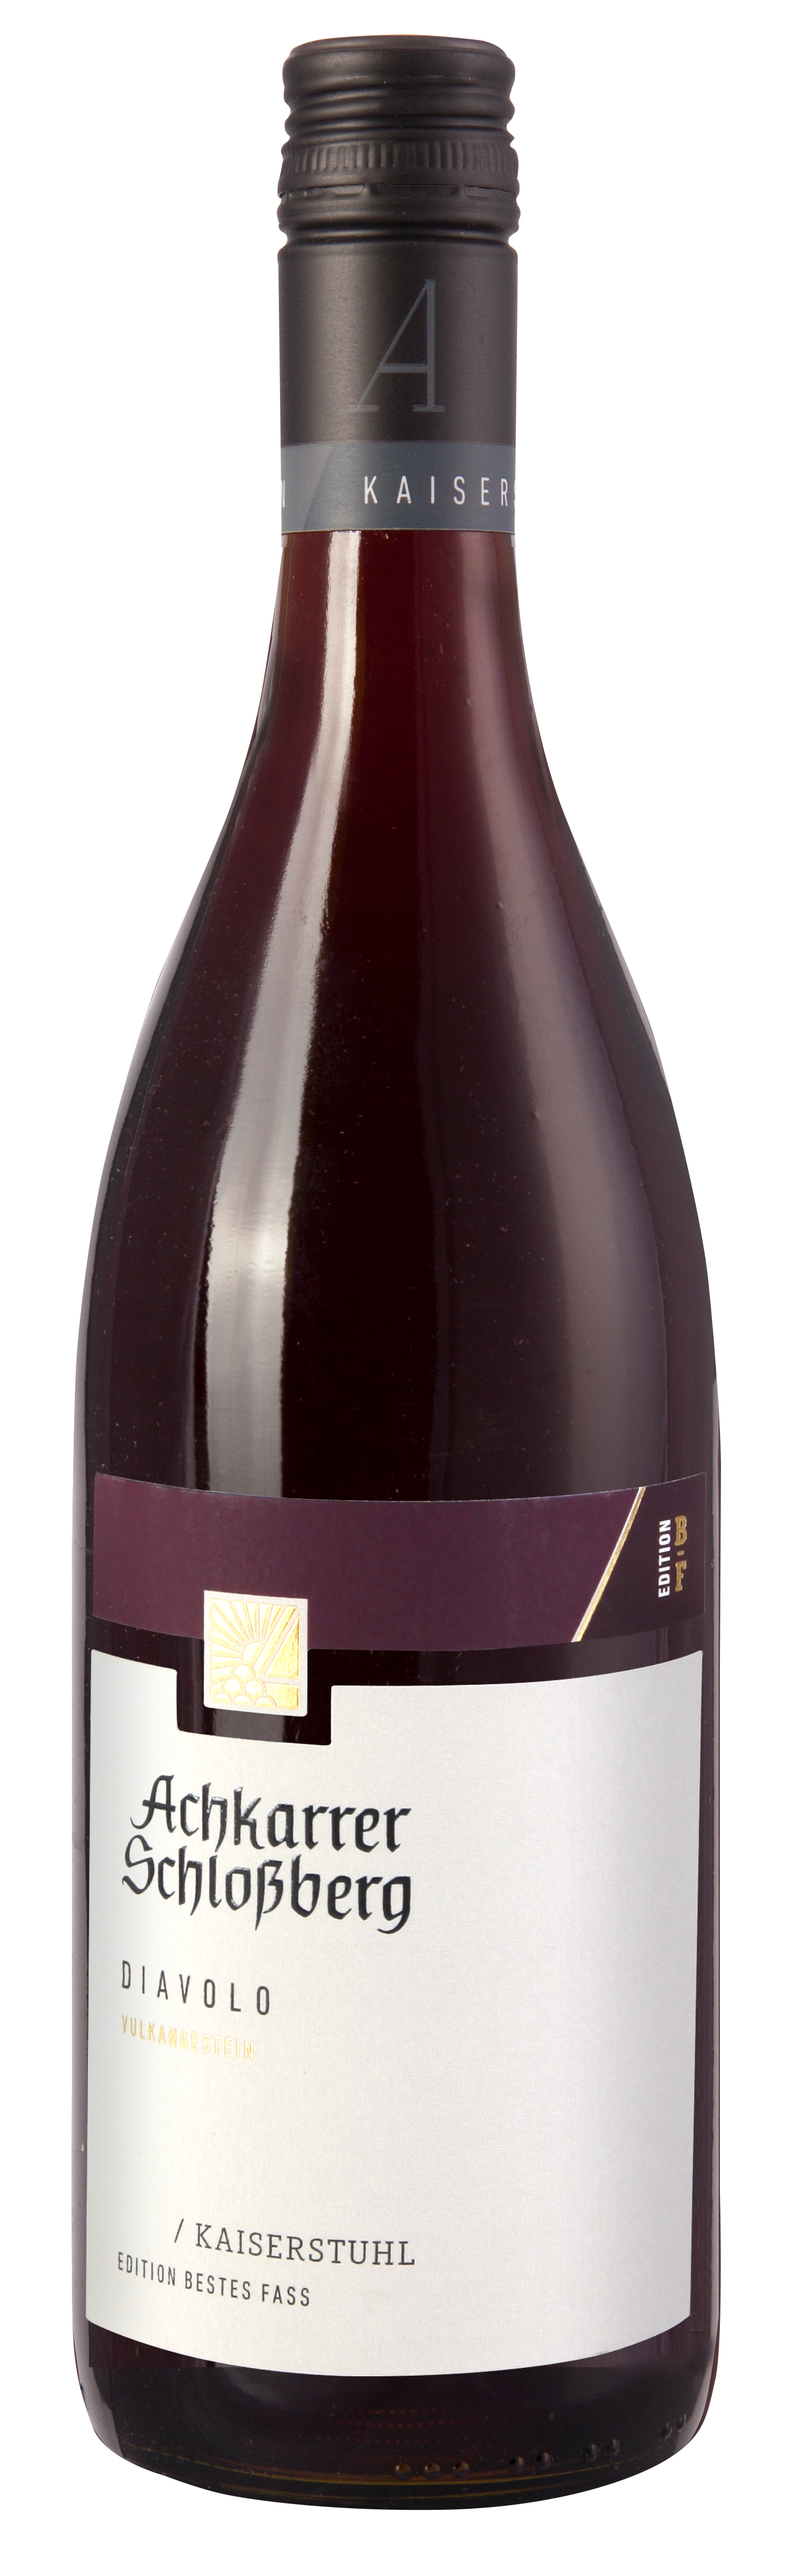 Achkarrer Schlossberg  DIAVOLO  BESTES FASS Rotwein Cuvée Qualitätswein